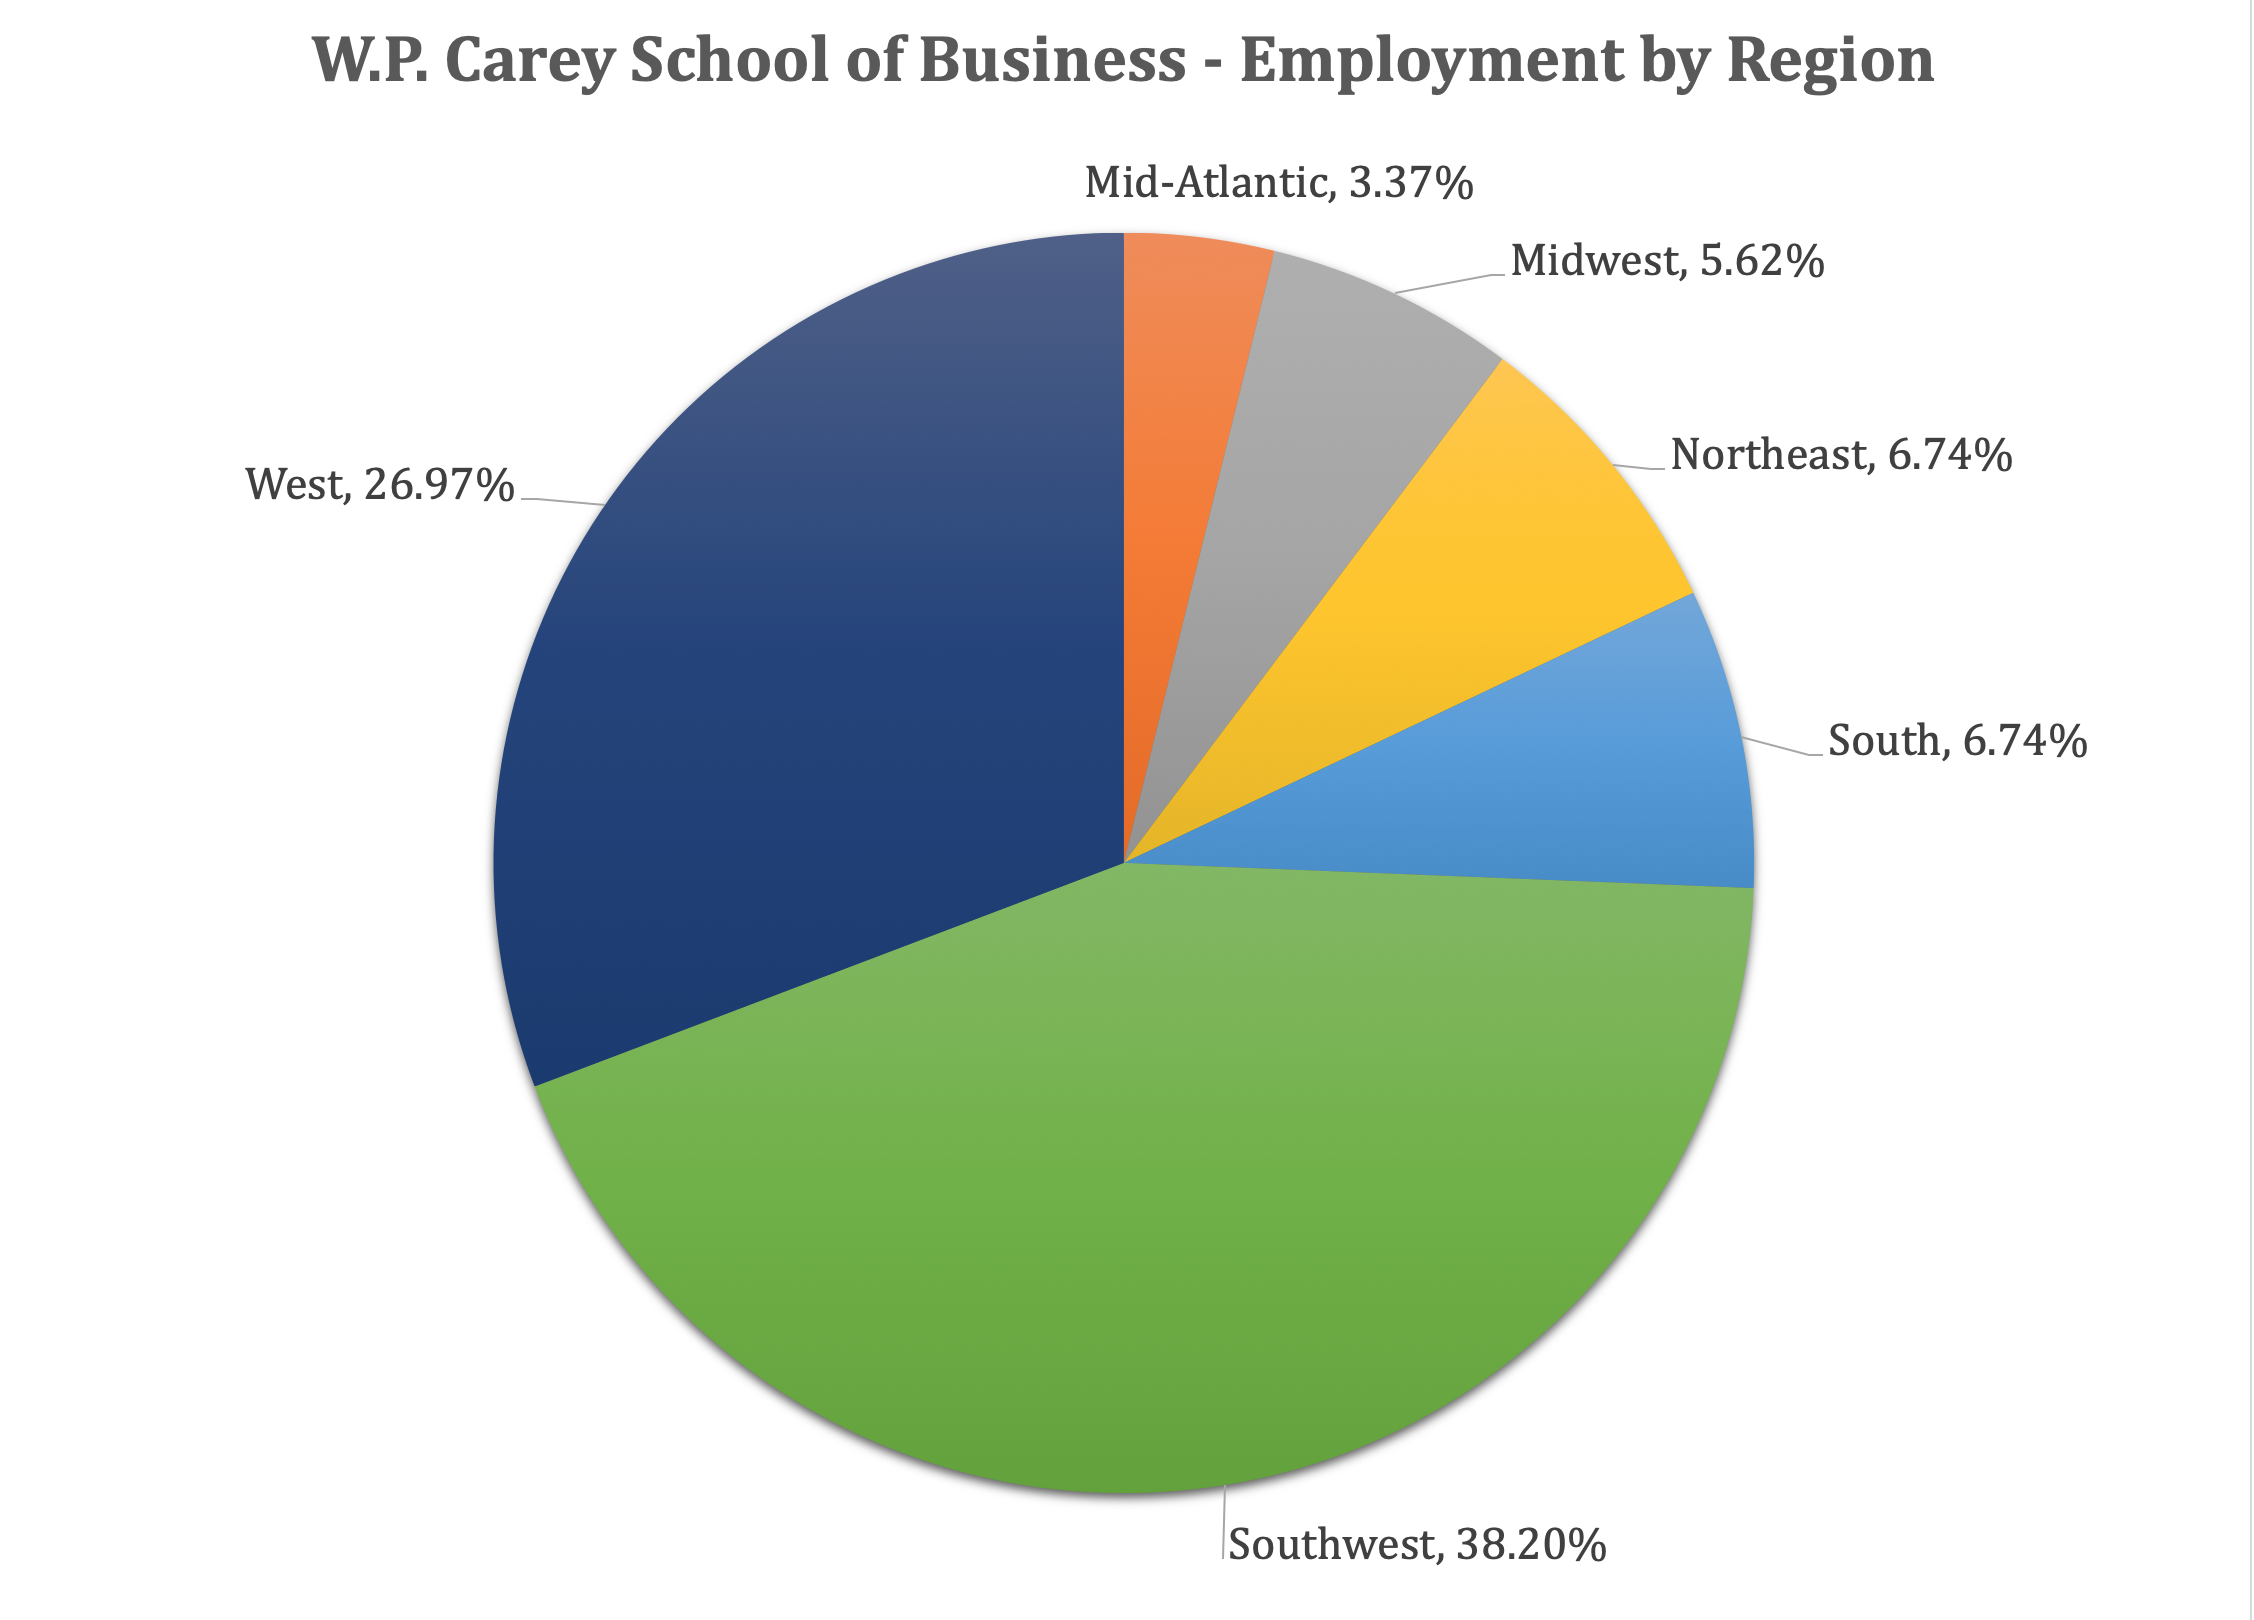 ASU MBA Program - W.P. Carey School of Business - Employment by Region